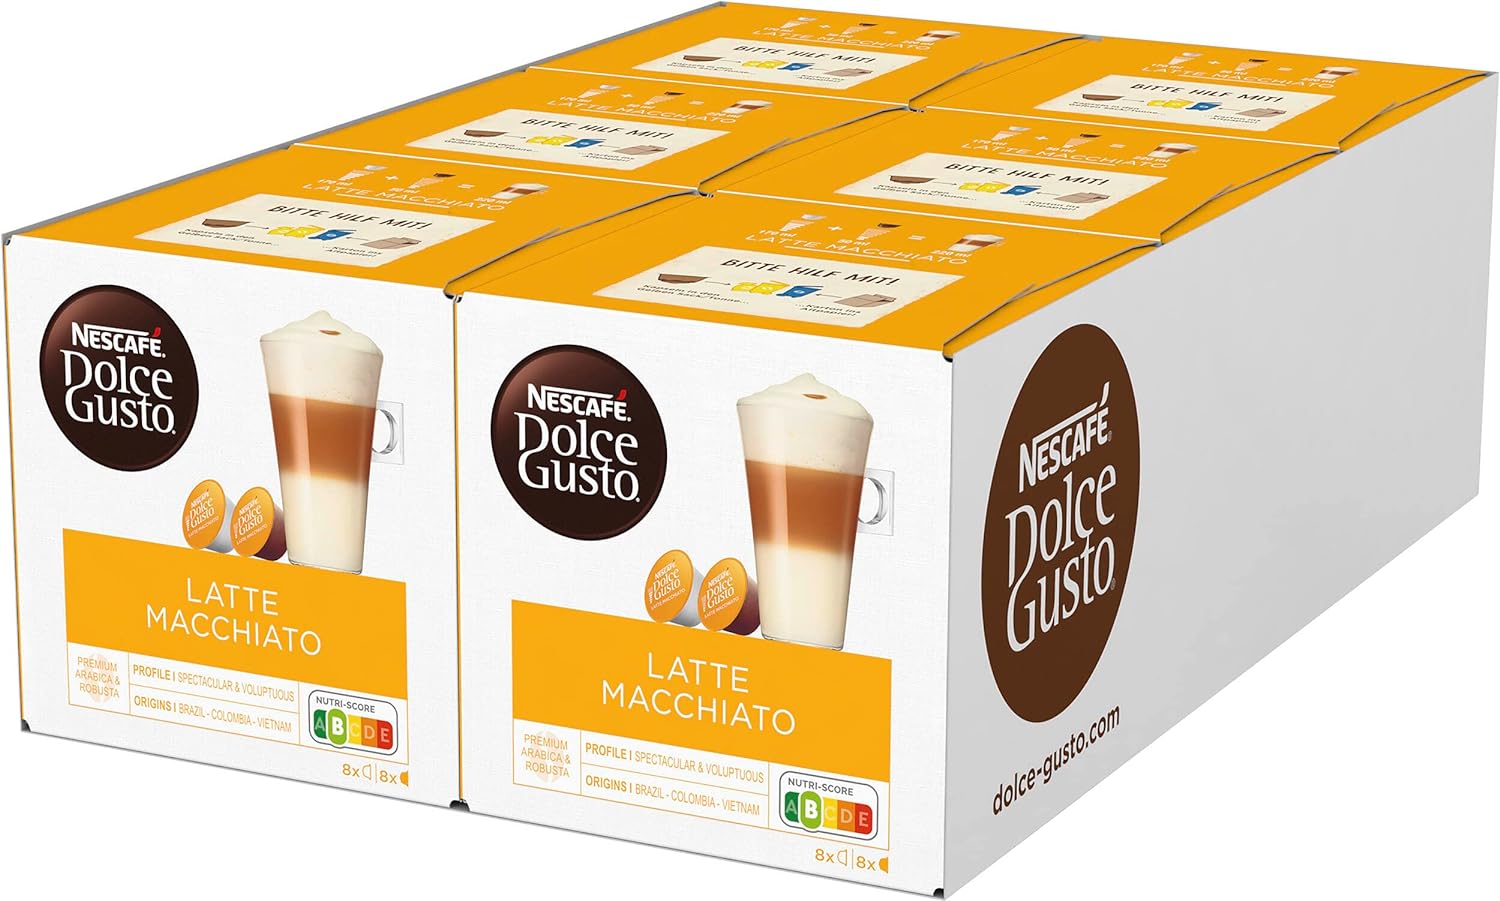 NESCAFÉ Dolce Gusto Latte Macchiato, 96 Coffee Capsules, Aromatic Espresso, 3-Layer Delicacy Made of Fine Milk Foam, Aroma Sealed Capsules, Pack of 6 (6 x 16 Capsules)